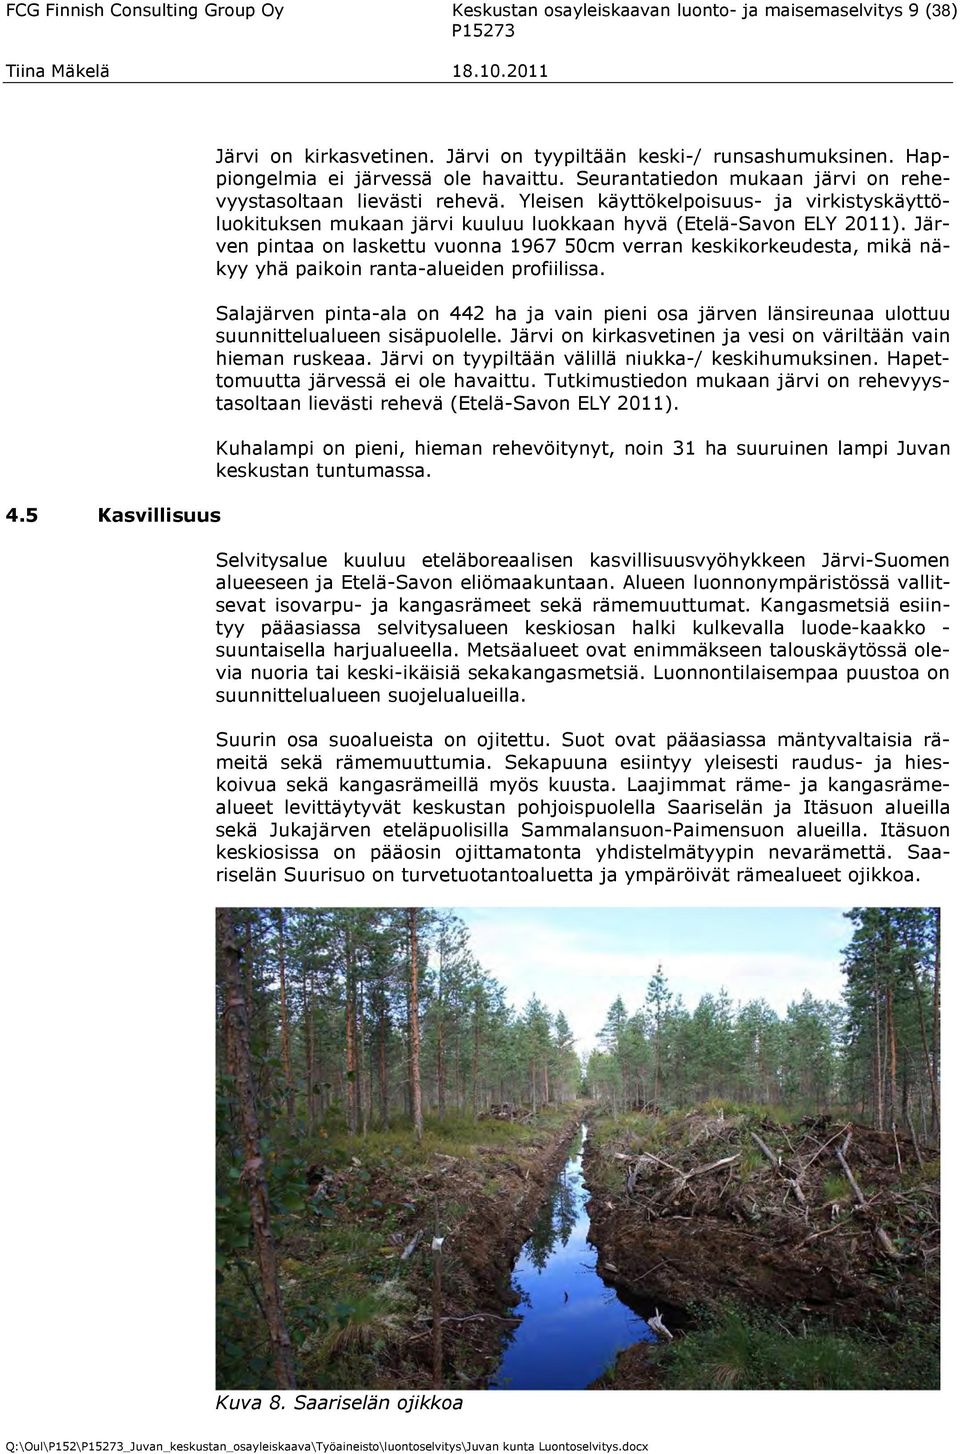 Yleisen käyttökelpoisuus- ja virkistyskäyttöluokituksen mukaan järvi kuuluu luokkaan hyvä (Etelä-Savon ELY 2011).